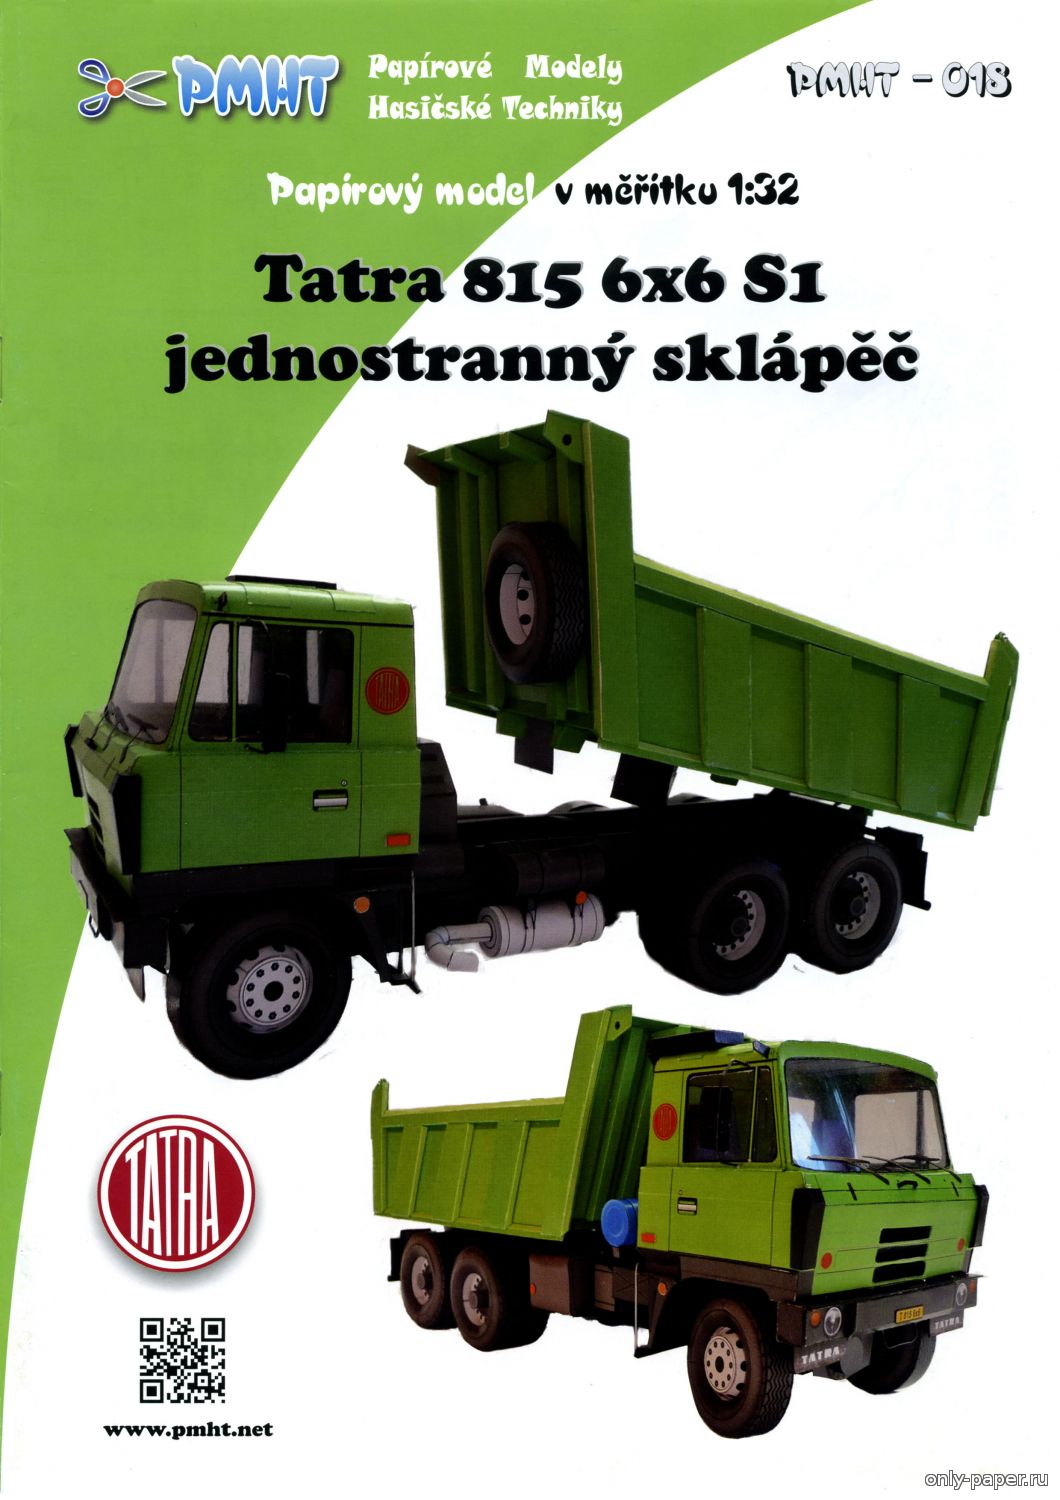 Tatra 815 6x6 S1 (PMHT 018) из бумаги, модели сборные бумажные скачать .